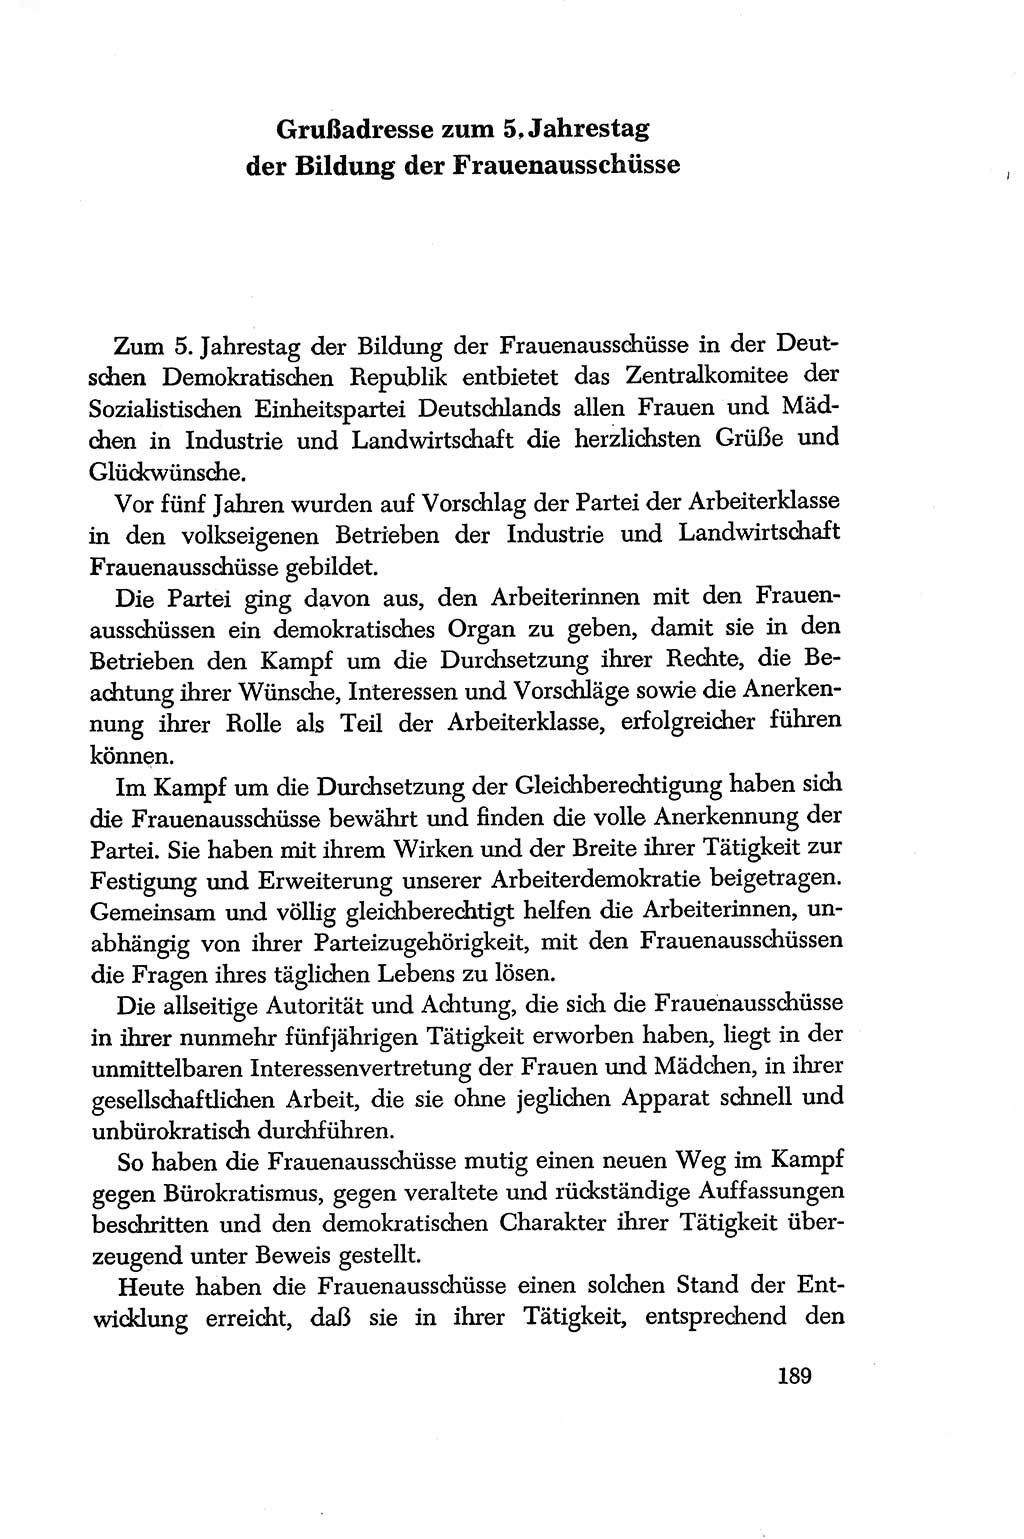 Dokumente der Sozialistischen Einheitspartei Deutschlands (SED) [Deutsche Demokratische Republik (DDR)] 1956-1957, Seite 189 (Dok. SED DDR 1956-1957, S. 189)